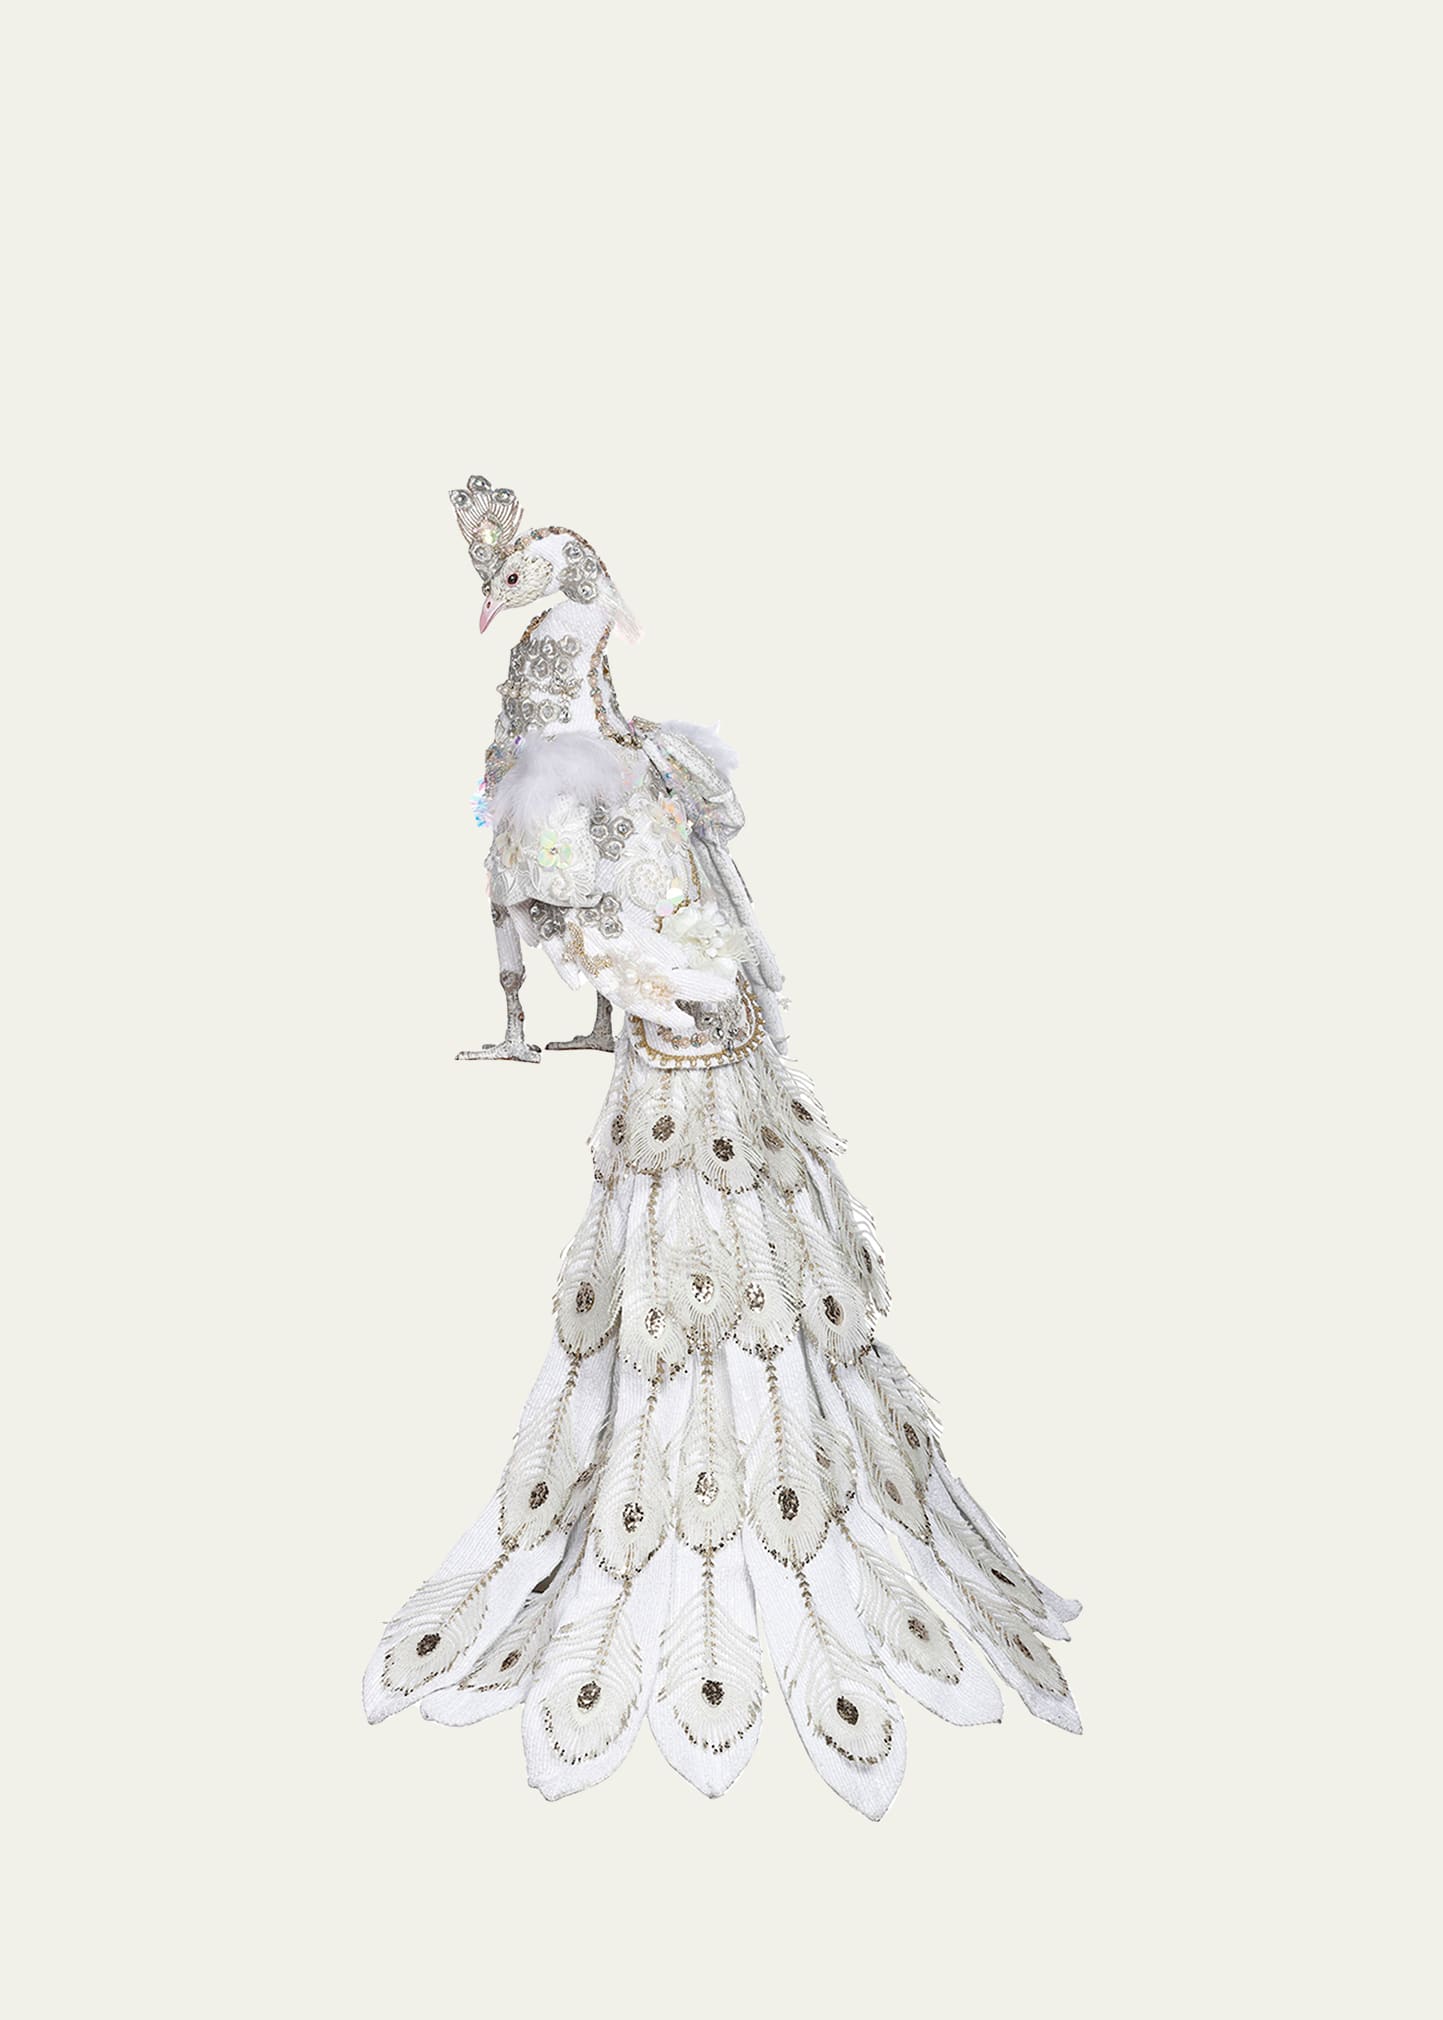 Decorative White Peacock